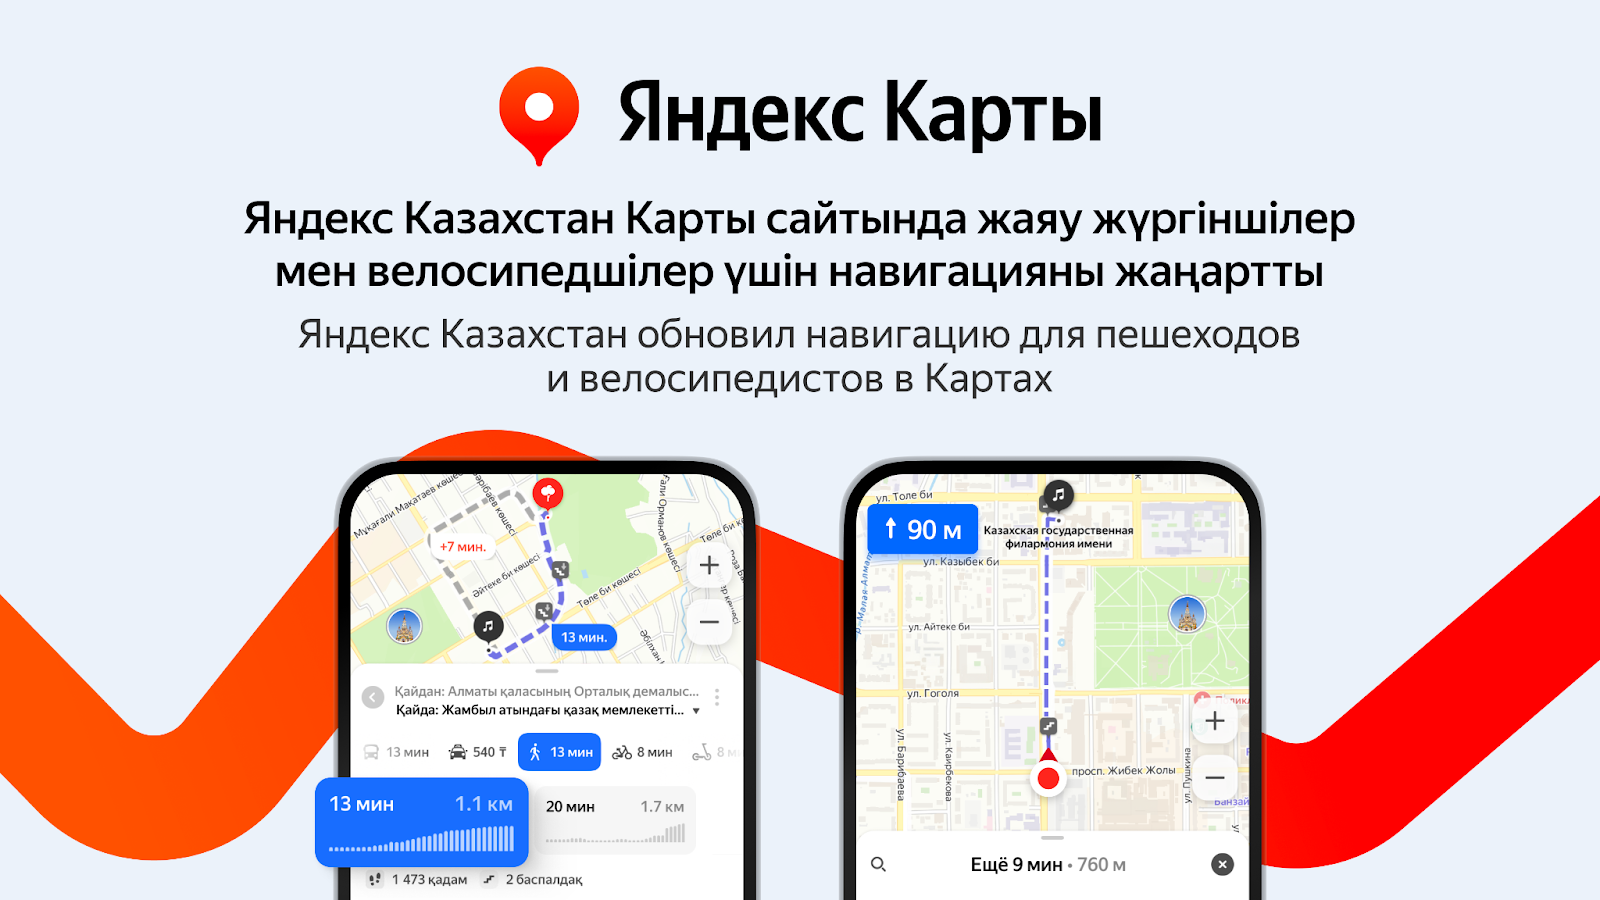 Яндекс Казахстан обновил навигацию для пешеходов и велосипедистов в Картах